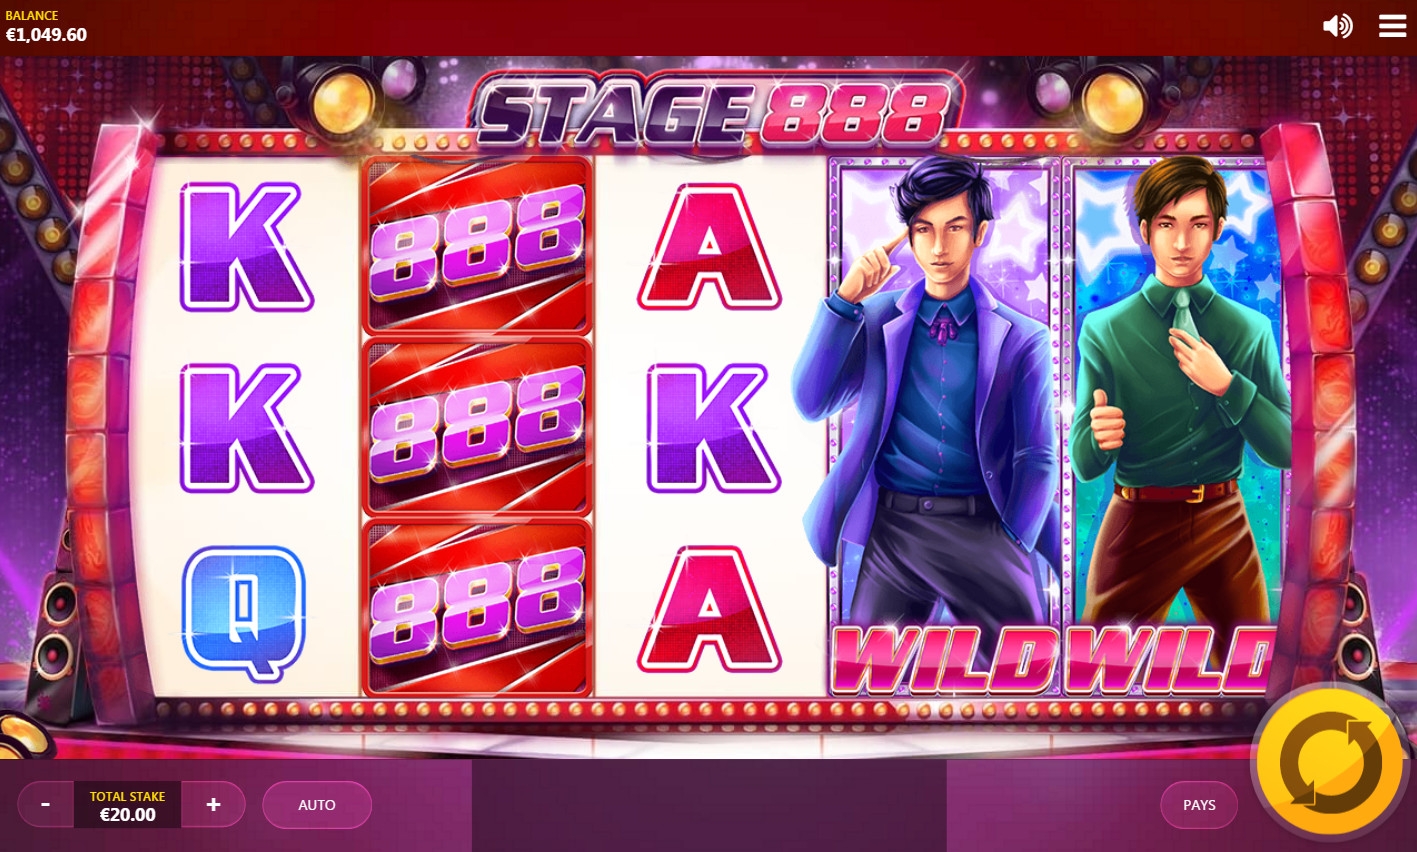 Stage 888 (Сцена 888) из раздела Игровые автоматы